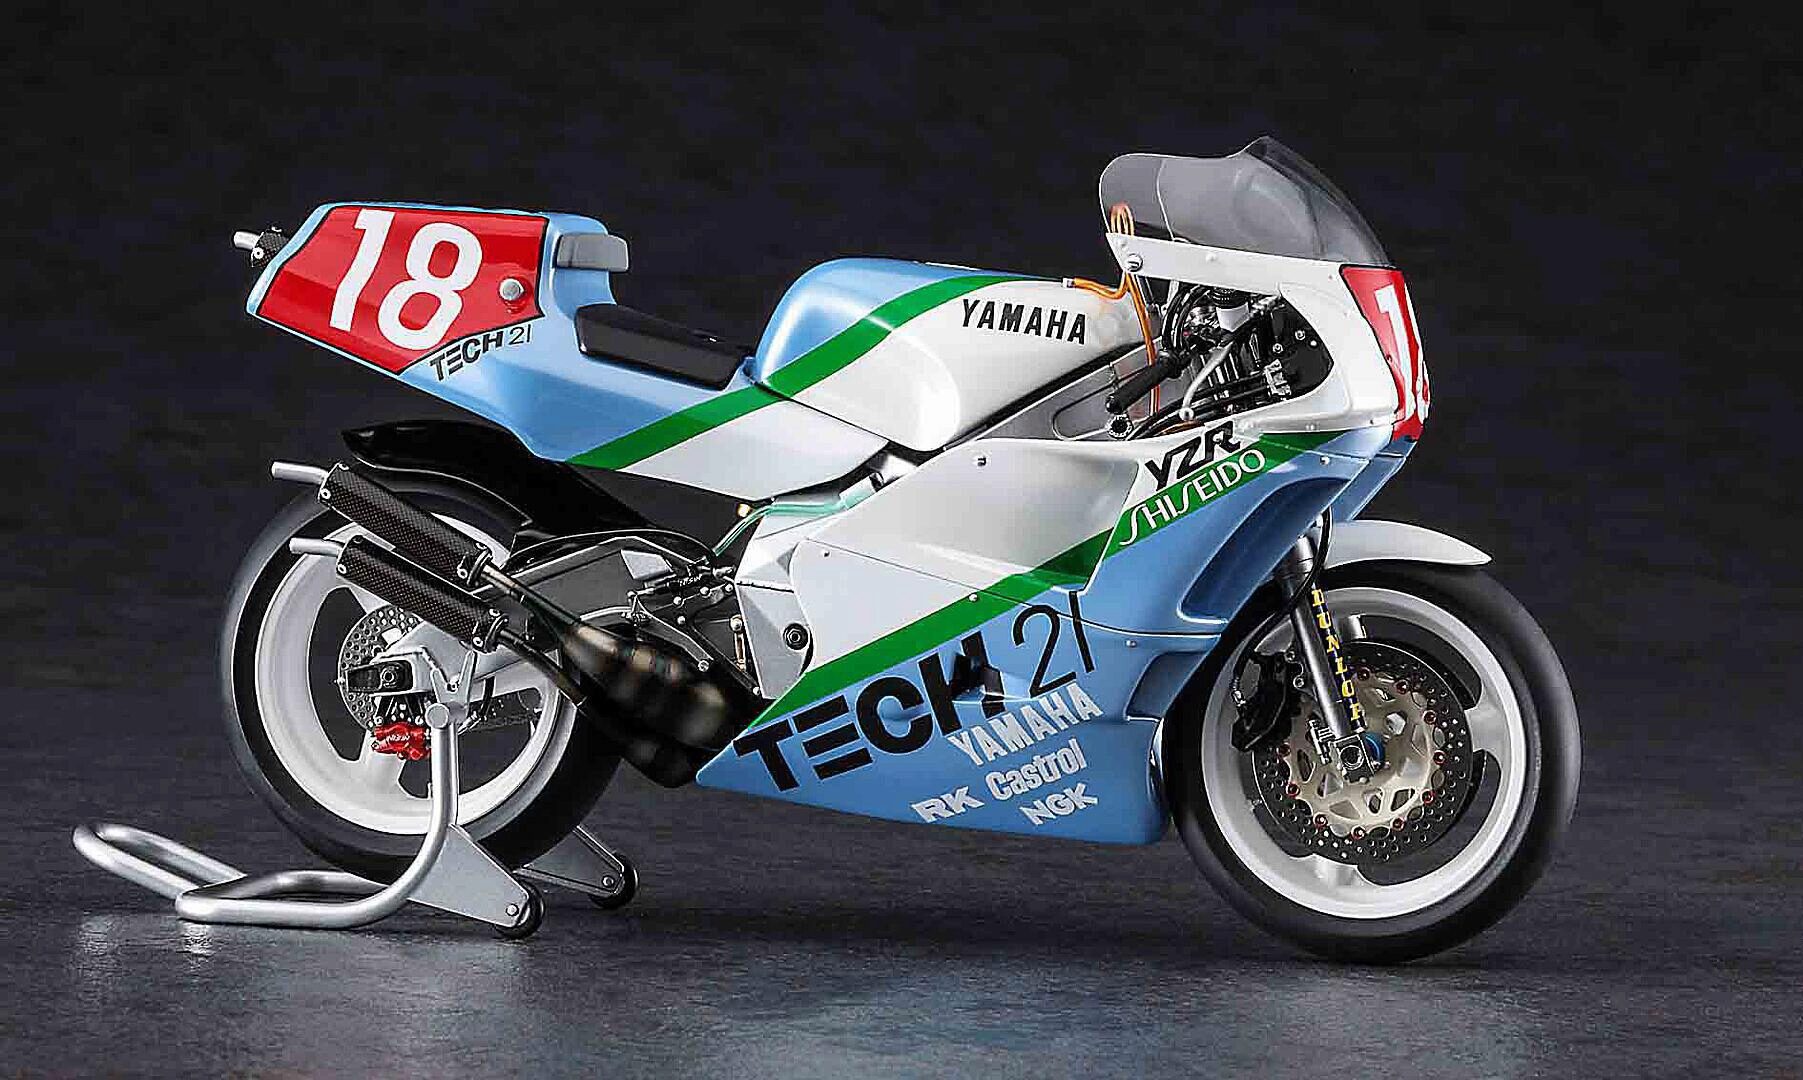 Hasegawa 21762 1/12 Yamaha YZR500, Tech 21 1988